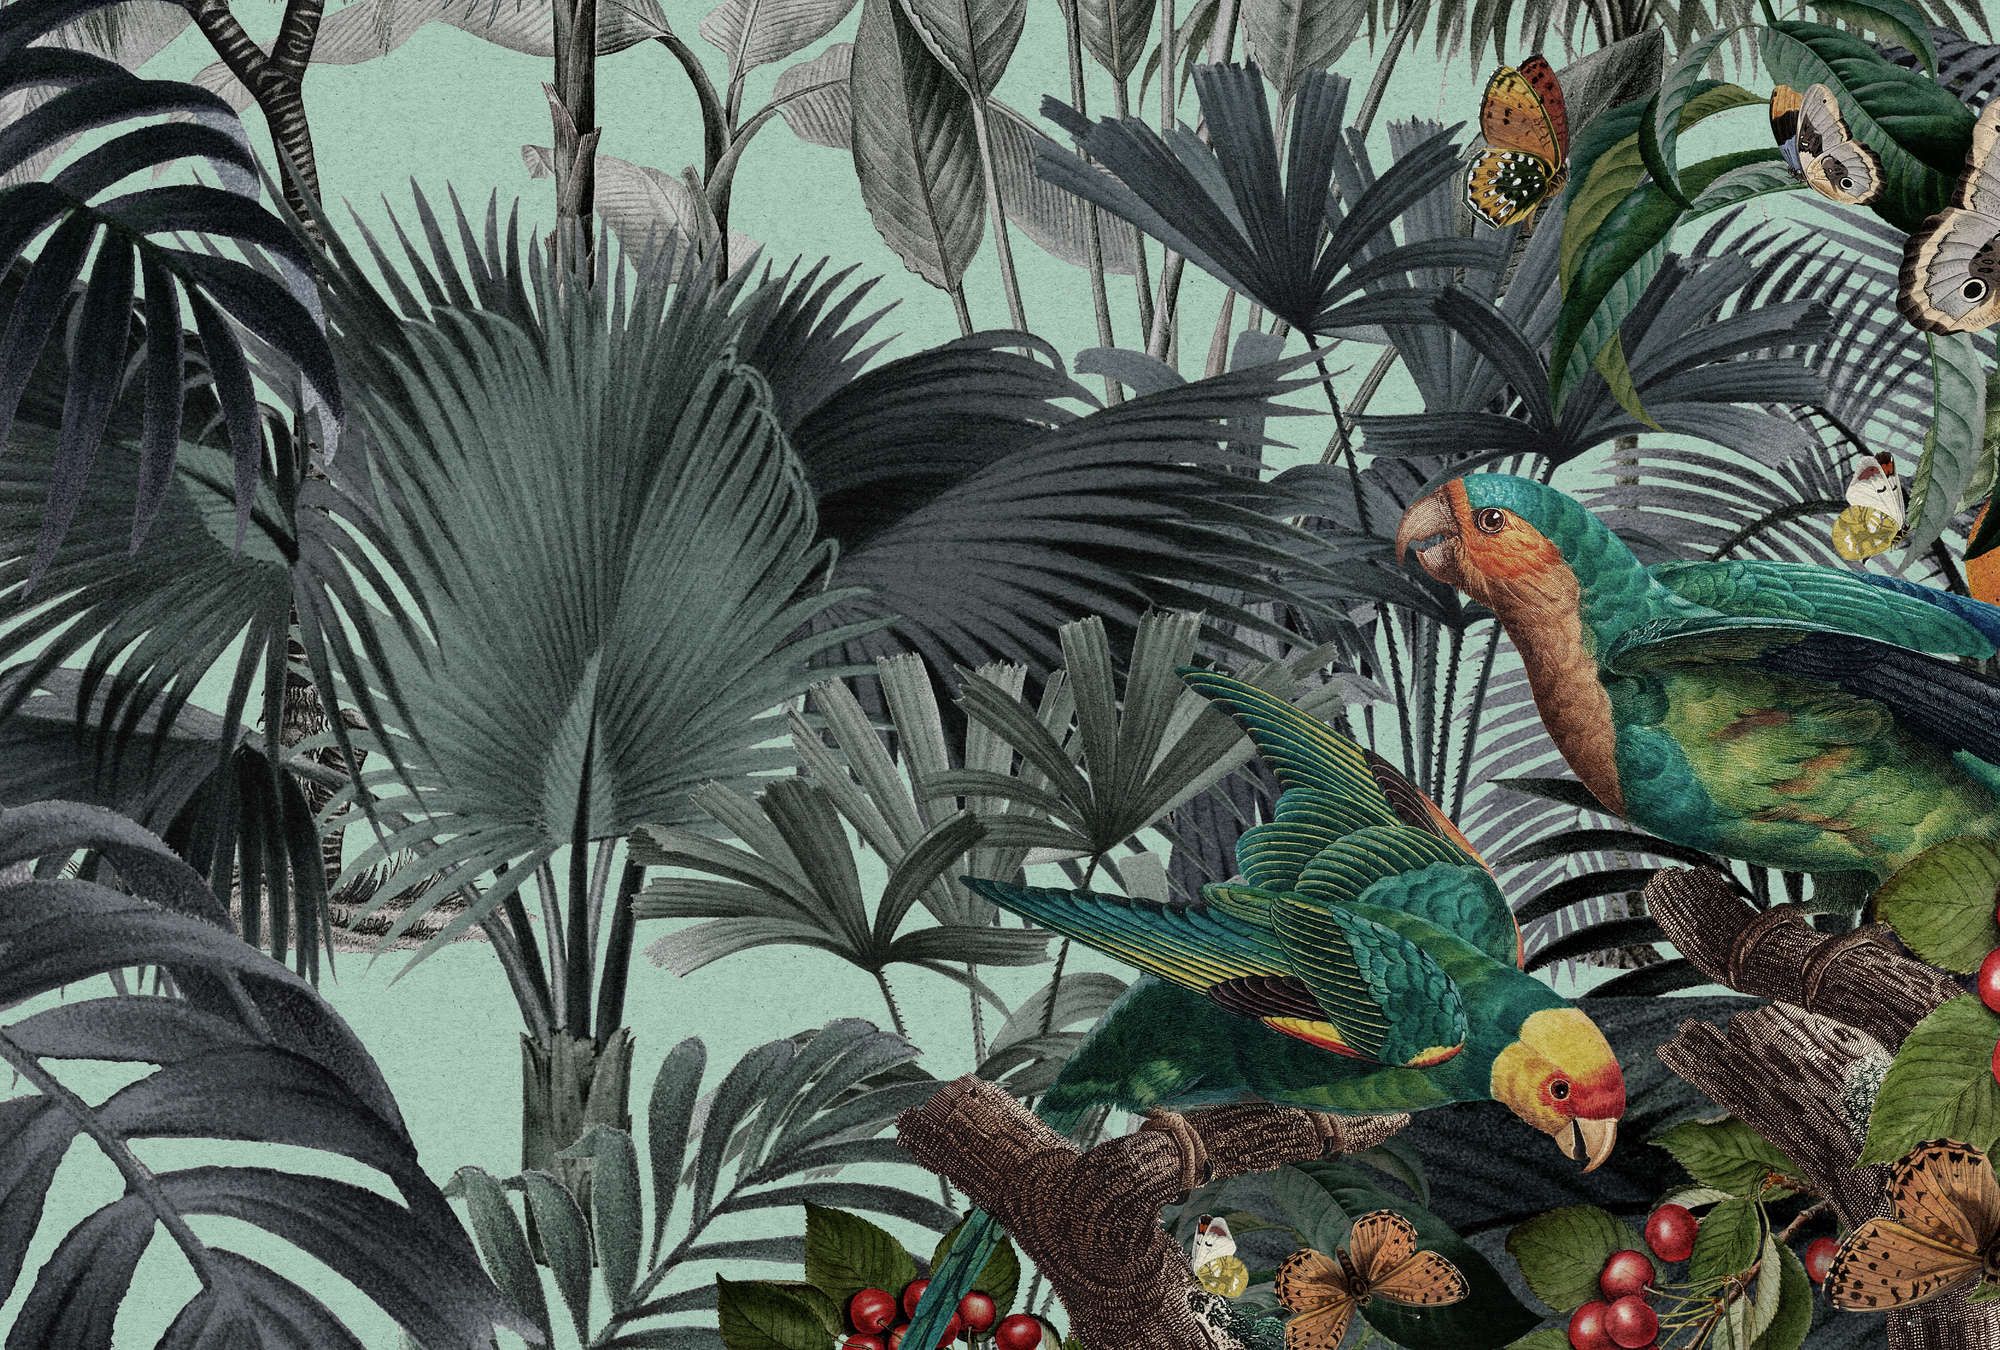             Fototapete »arabella« - Dschungel & Papageien auf Kraftpapier-Optik – Glattes, leicht perlmutt-schimmerndes Vlies
        